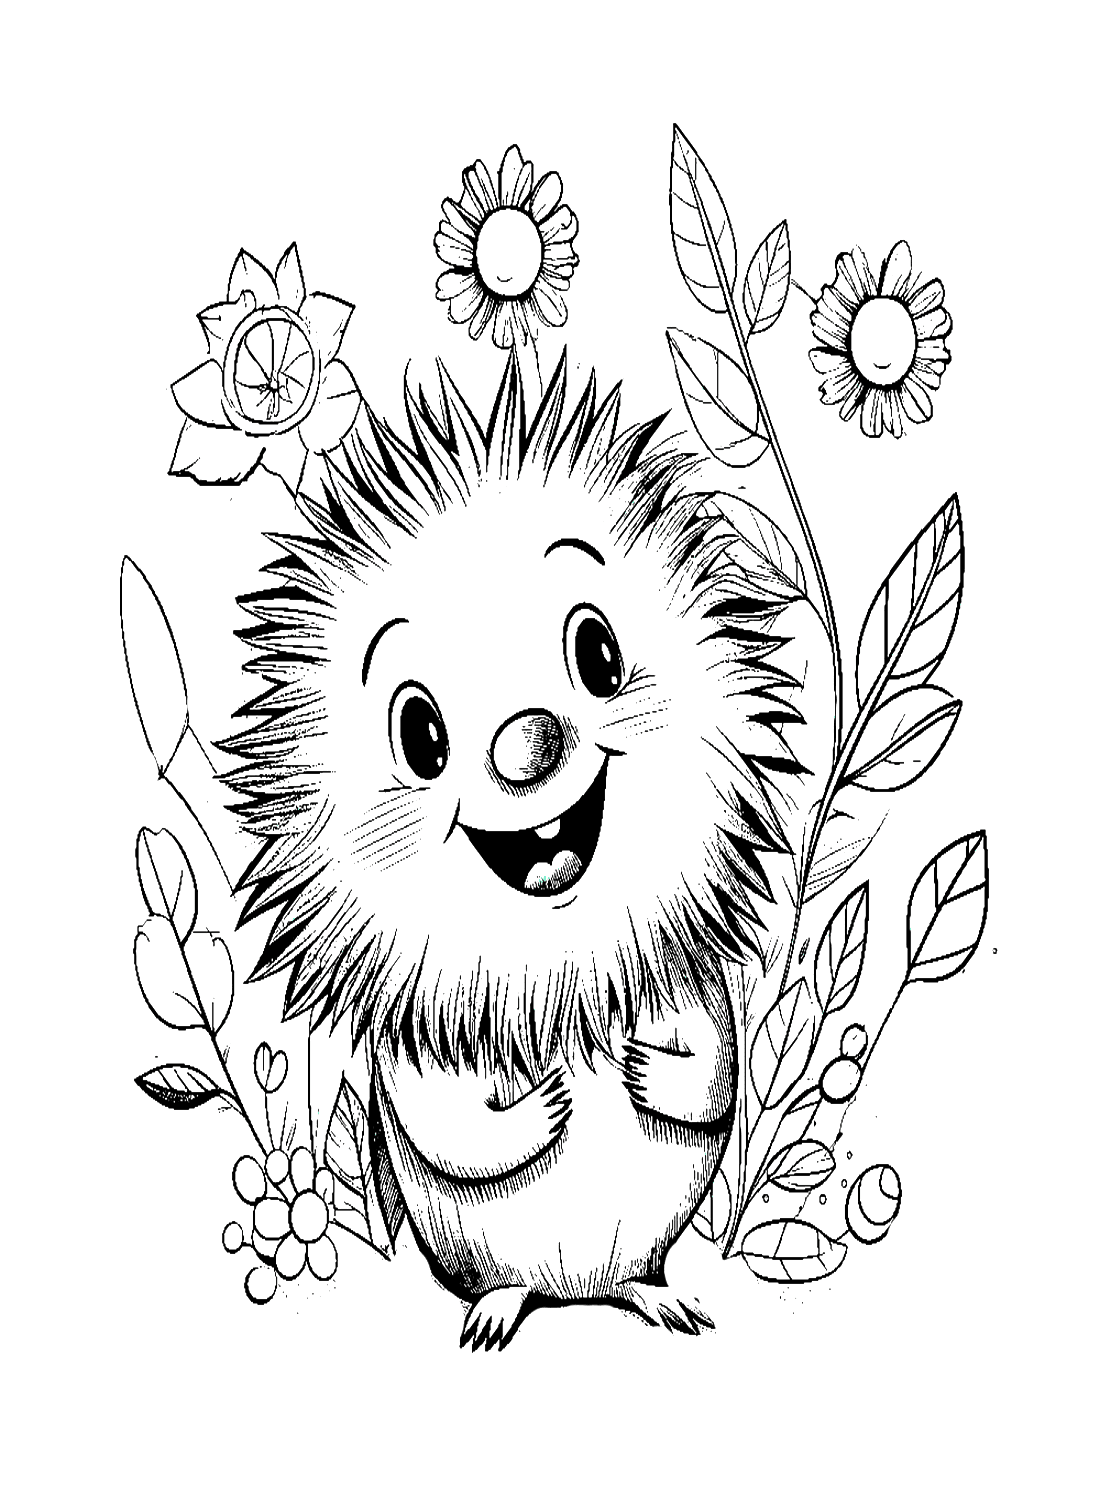 Página para colorear de puercoespín feliz de Porcupine